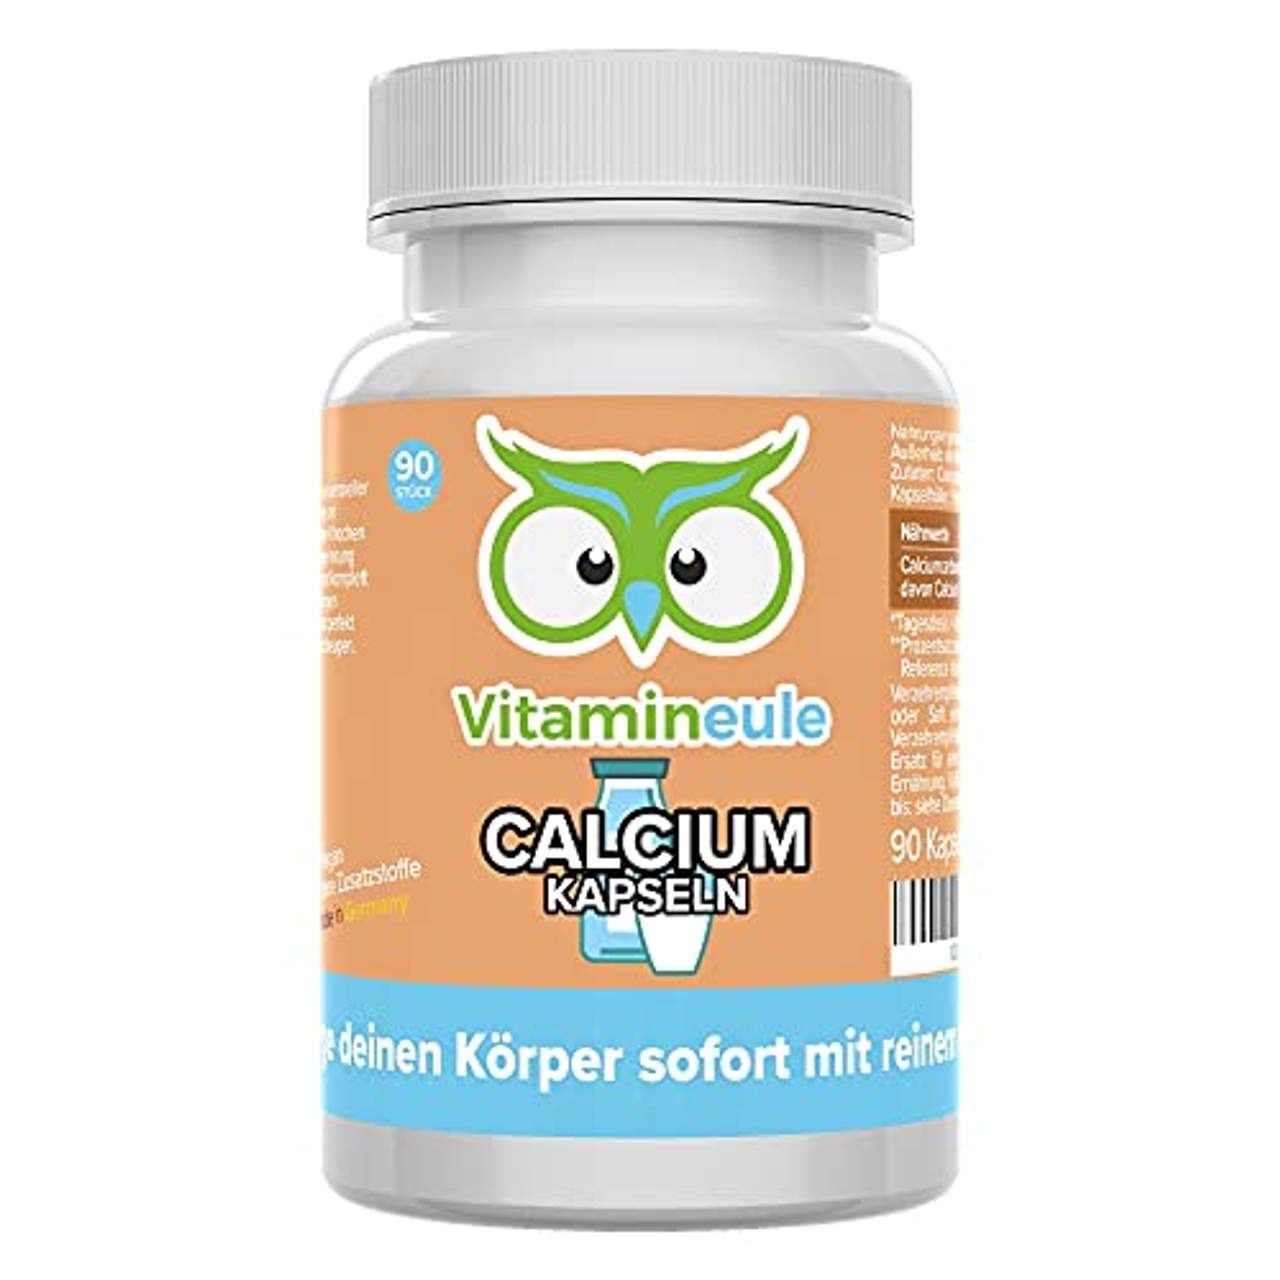 Vitamineule Calcium Kapseln hochdosiert